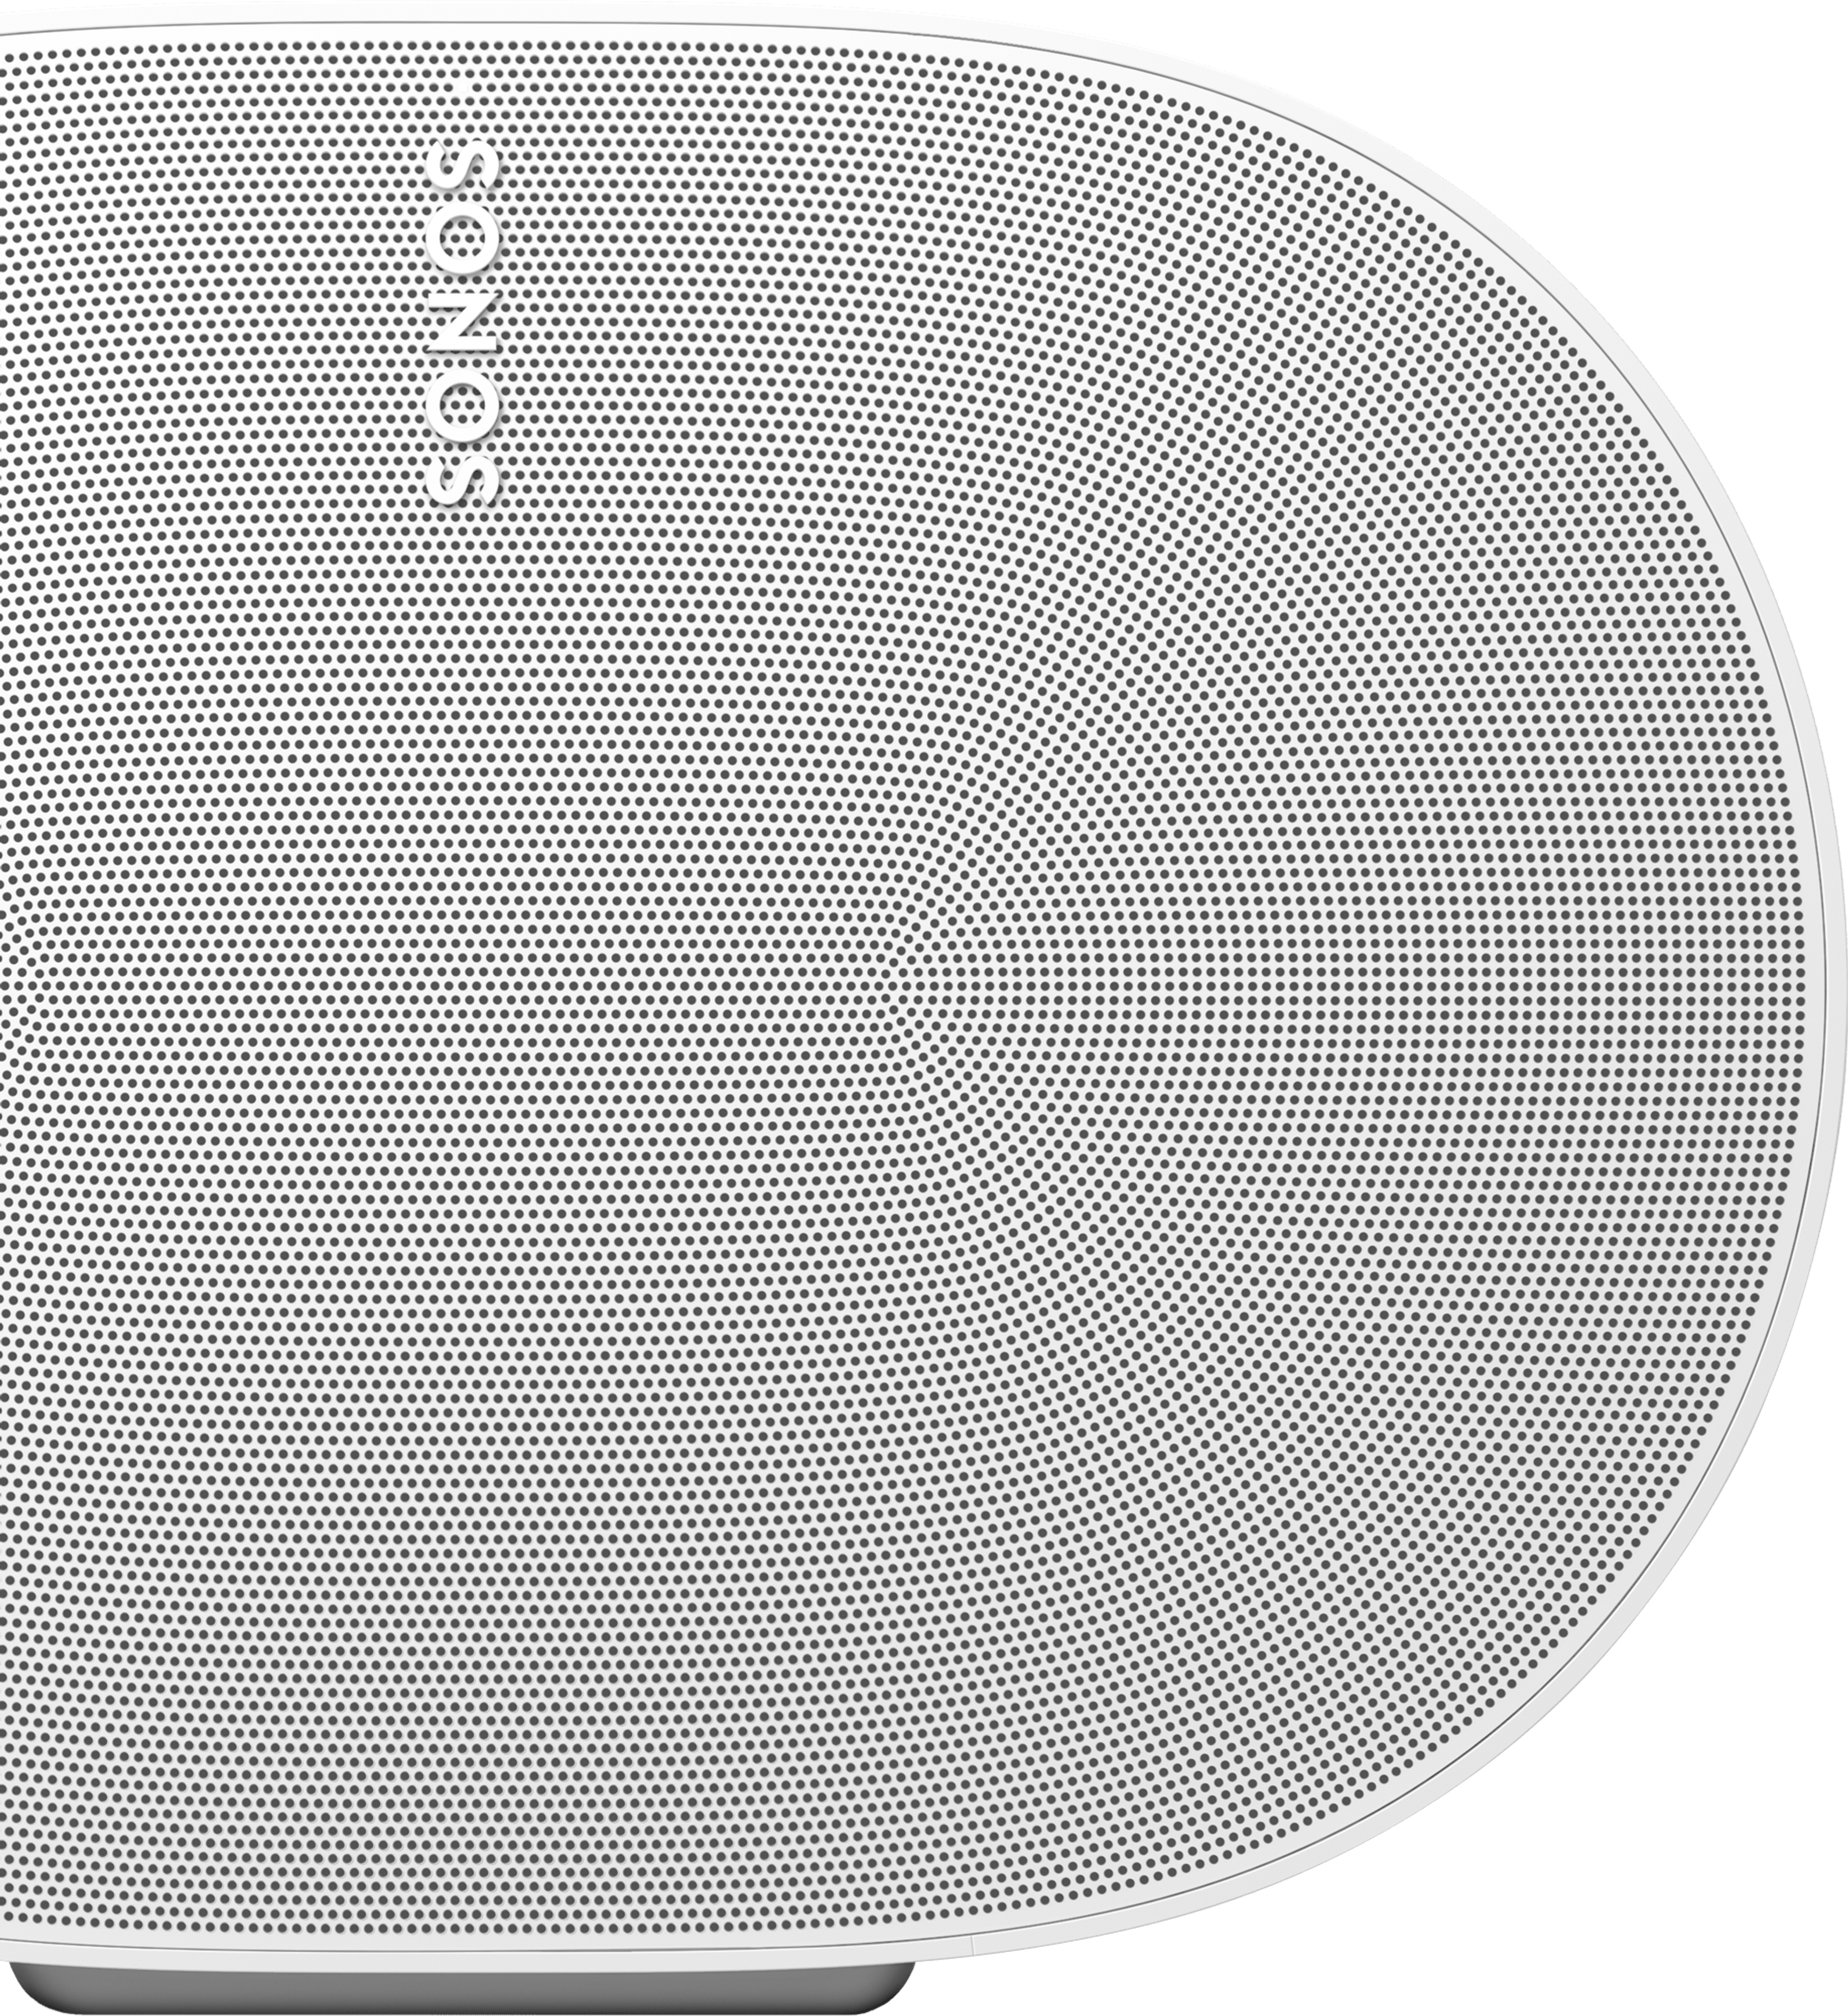 Nahaufnahme der Vorderseite eines Sonos Era 300 in Weiß